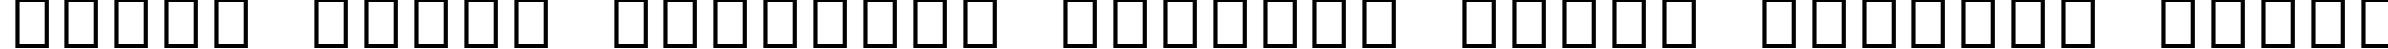 Пример написания шрифтом Arial Alternative Symbol текста на белорусском